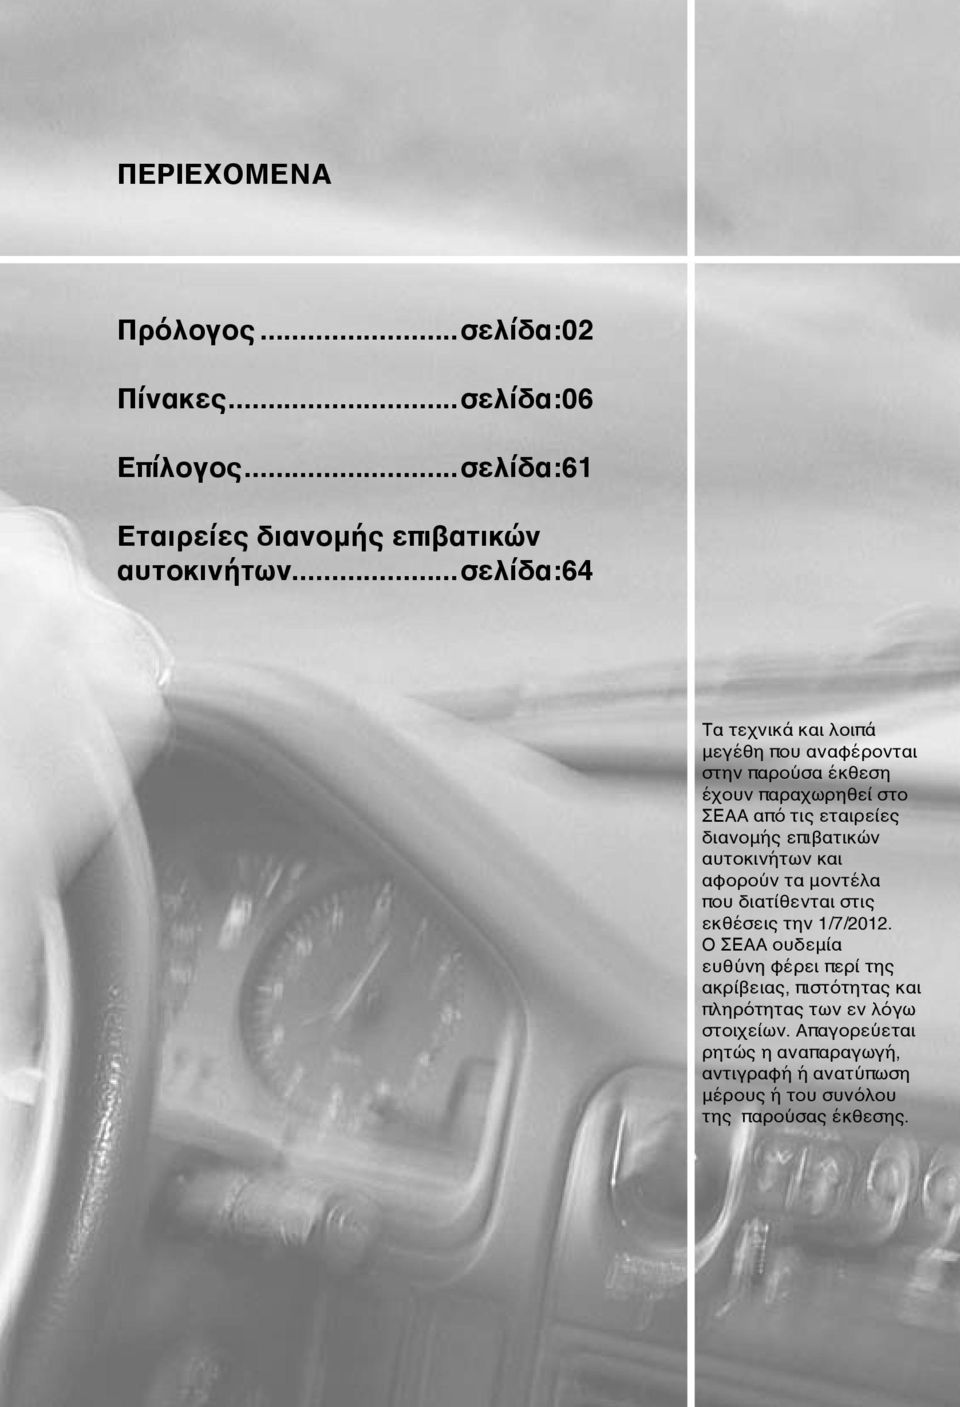 επιβατικών αυτοκινήτων και αφορούν τα μοντέλα που διατίθενται στις εκθέσεις την 1/7/2012.